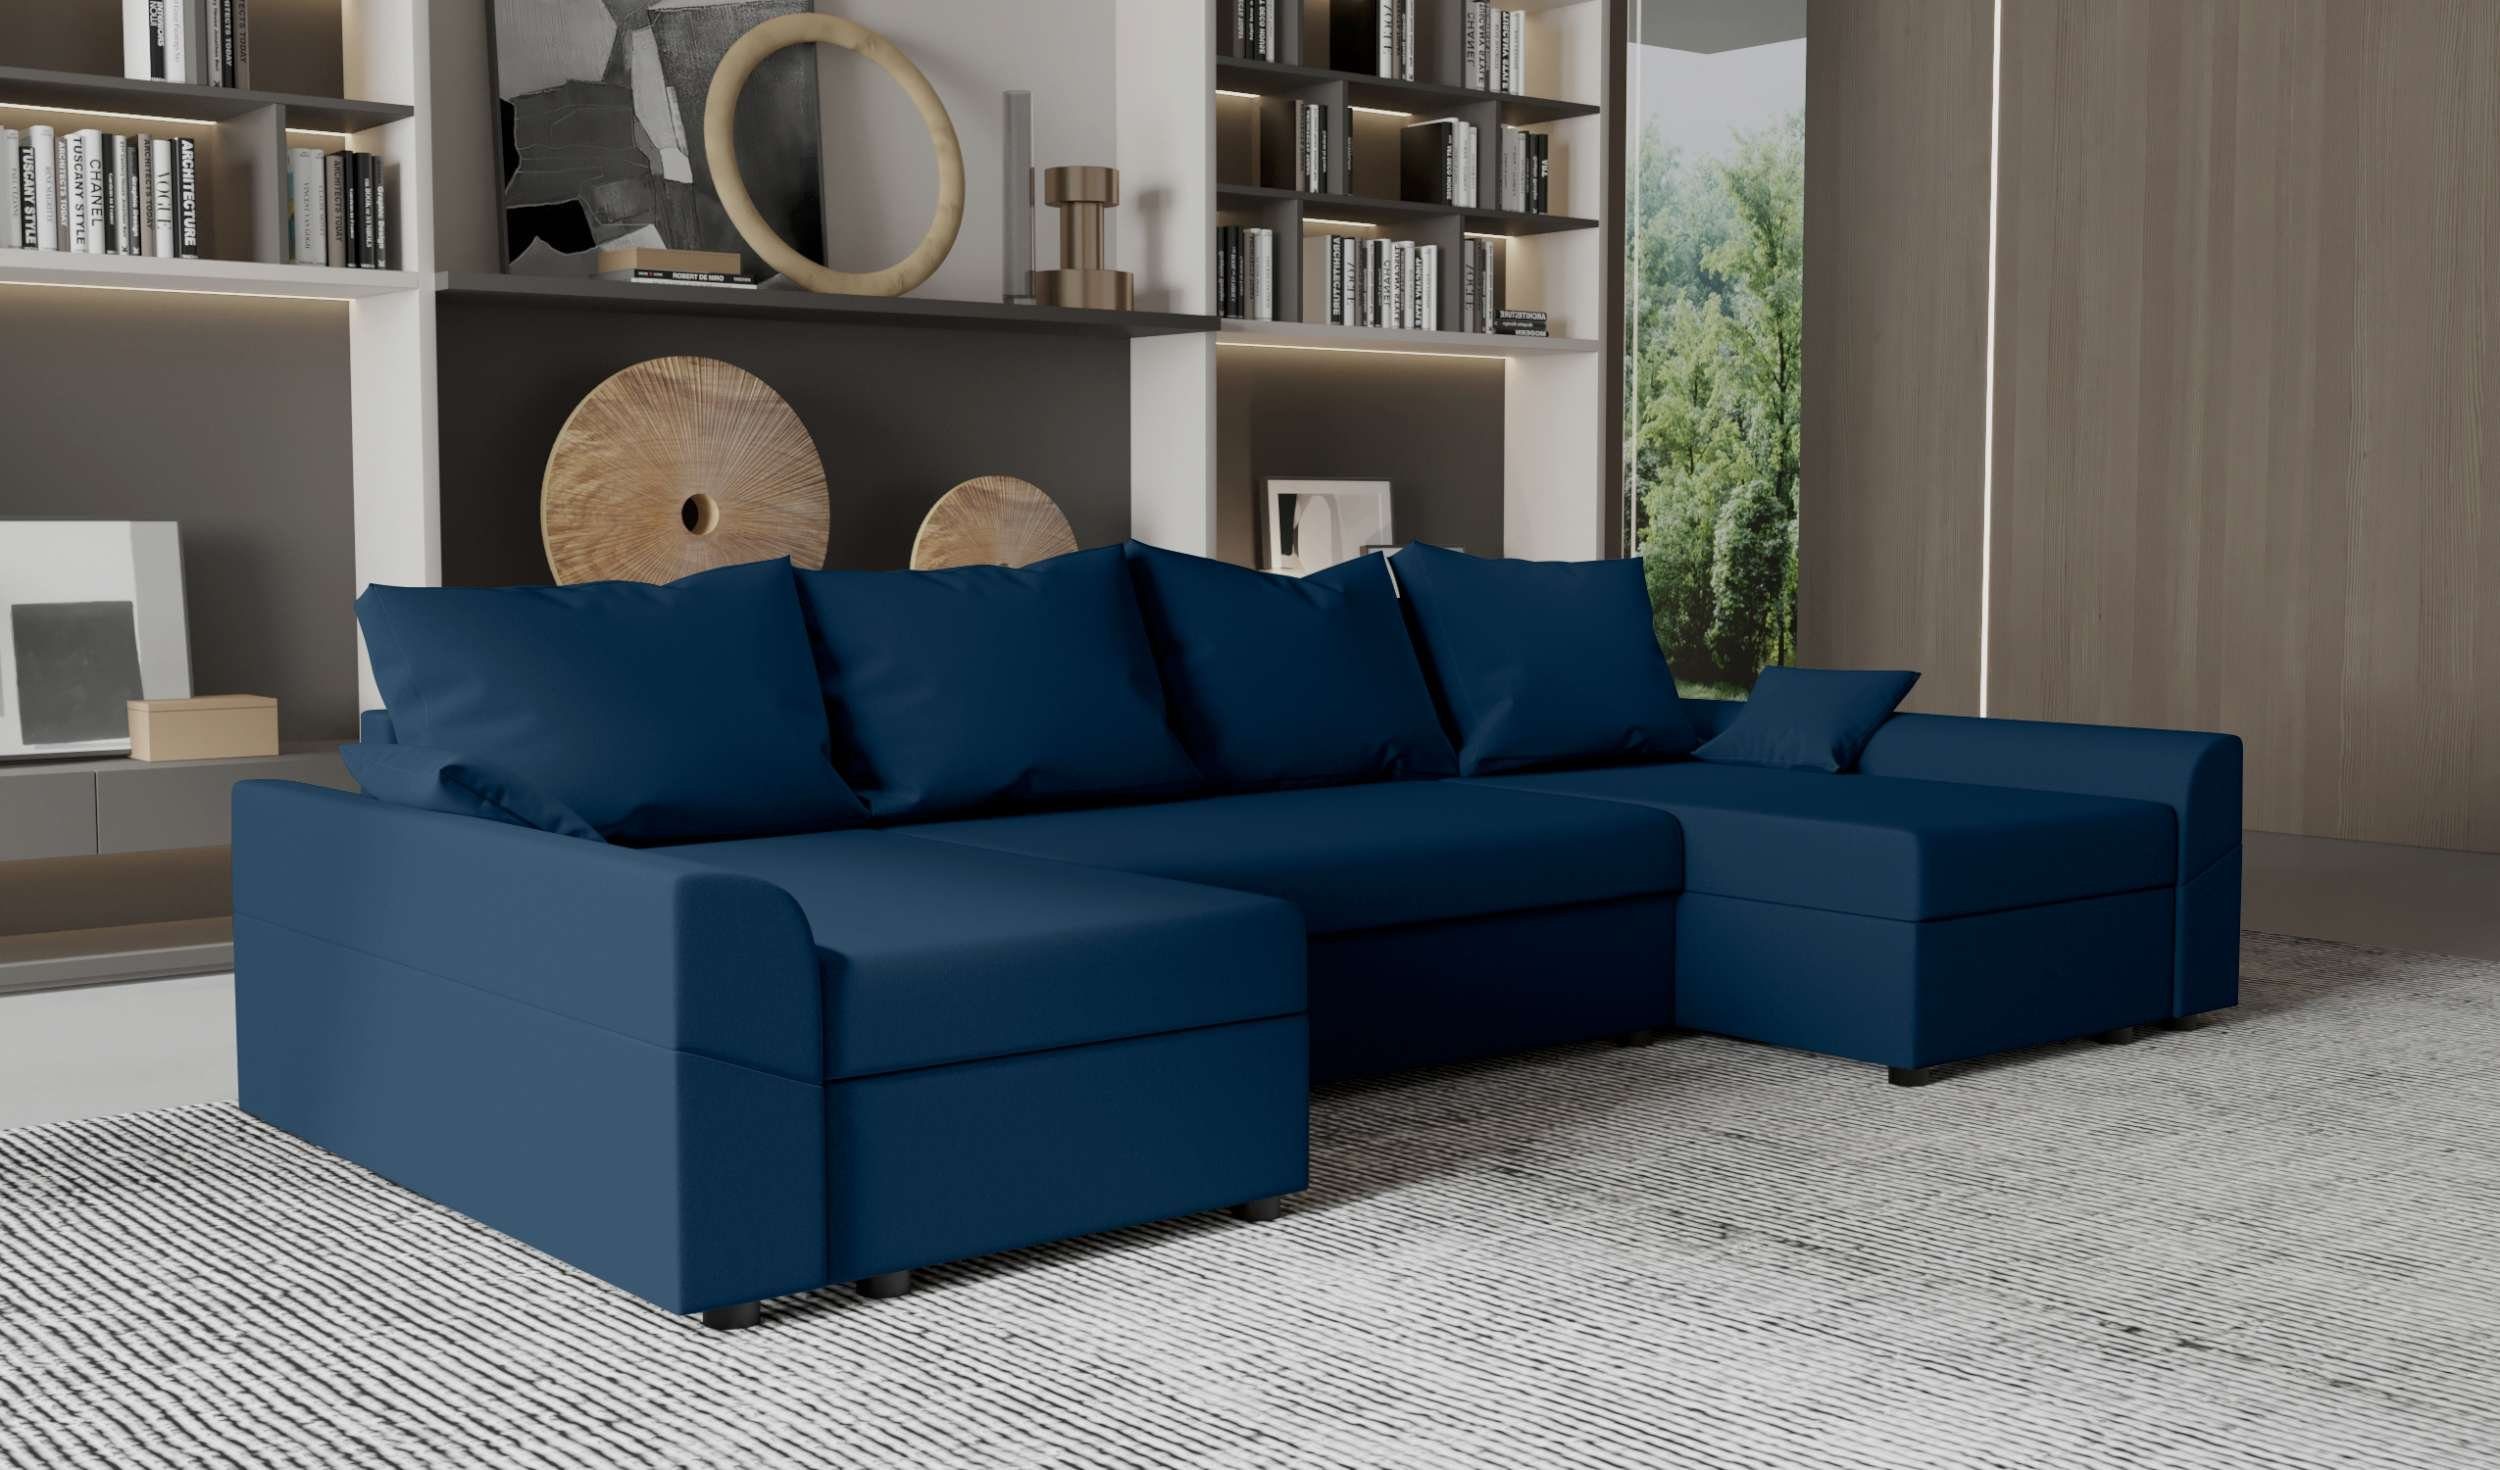 Stylefy Wohnlandschaft Carolina, U-Form, Eckcouch, Sitzkomfort, Design Sofa, mit Bettfunktion, mit Modern Bettkasten